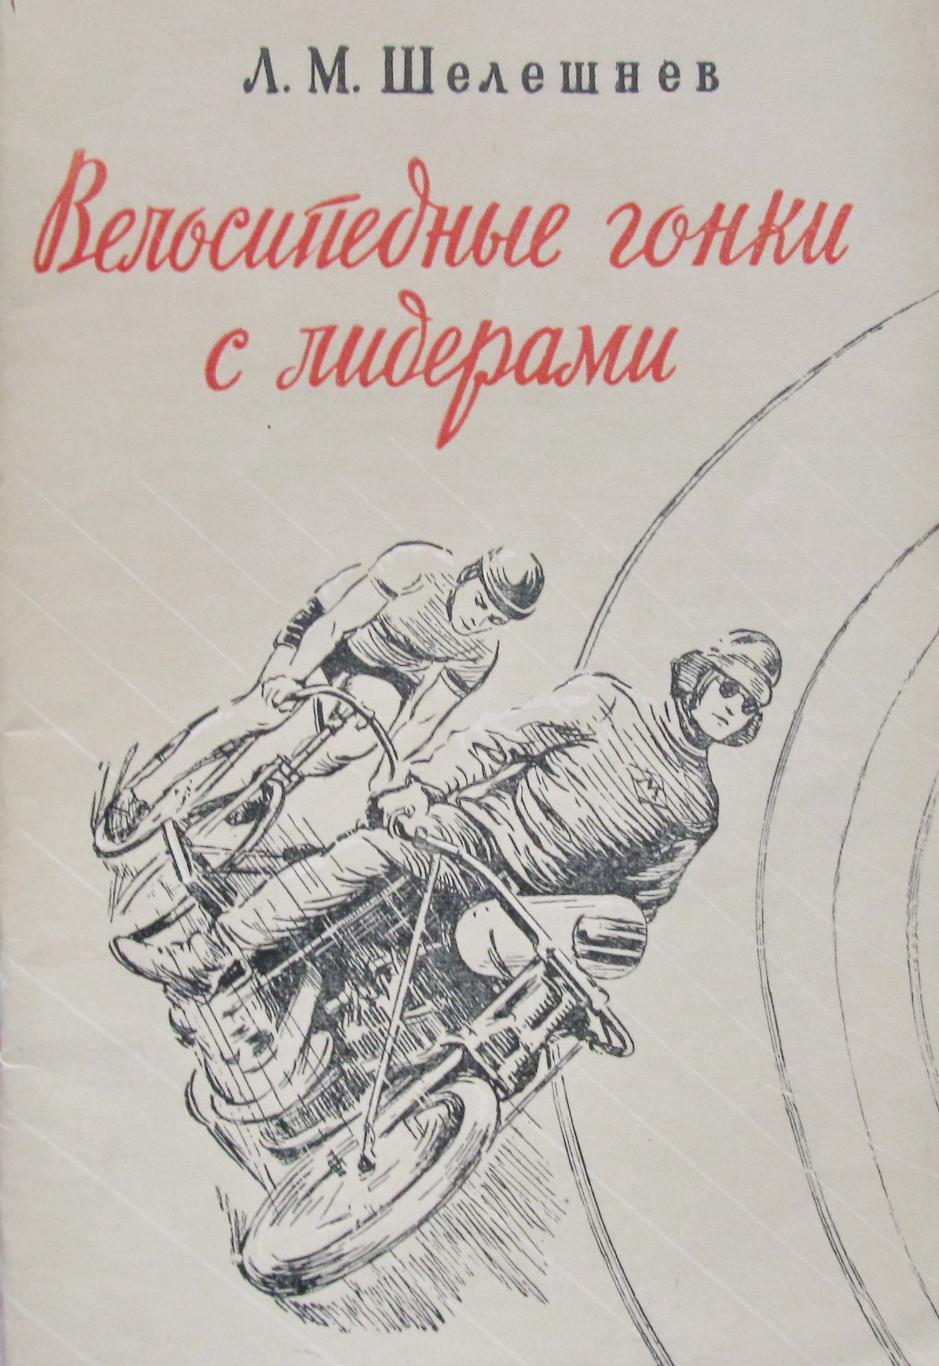 Л.М.Шелешнев. Велосипедные гонки с лидером. 1953 год.